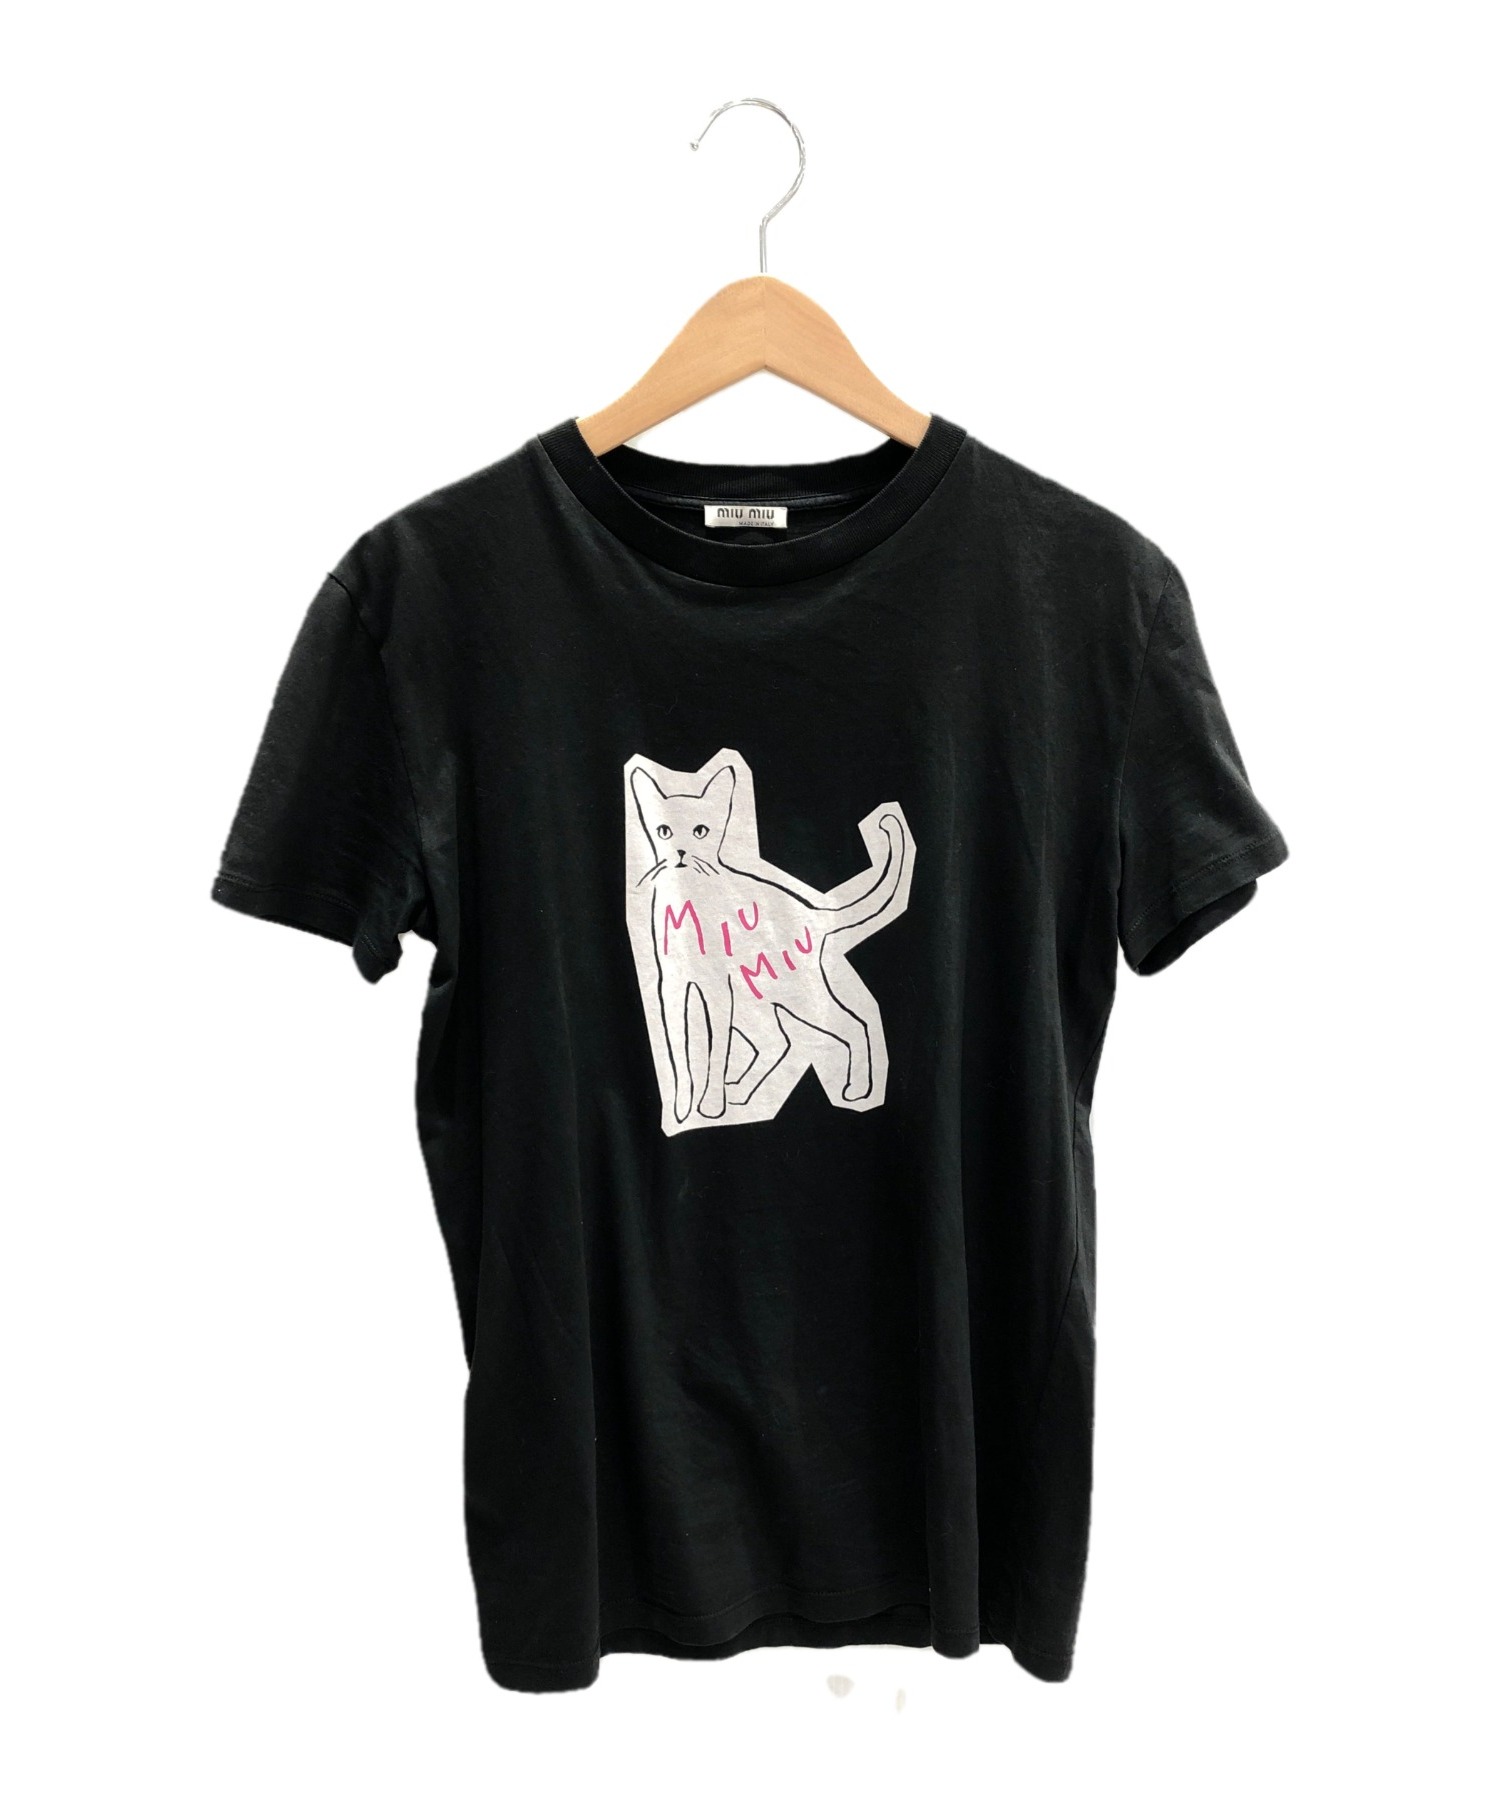 MIU MIU (ミュウミュウ) キャットデザインTシャツ ブラック サイズ:xs